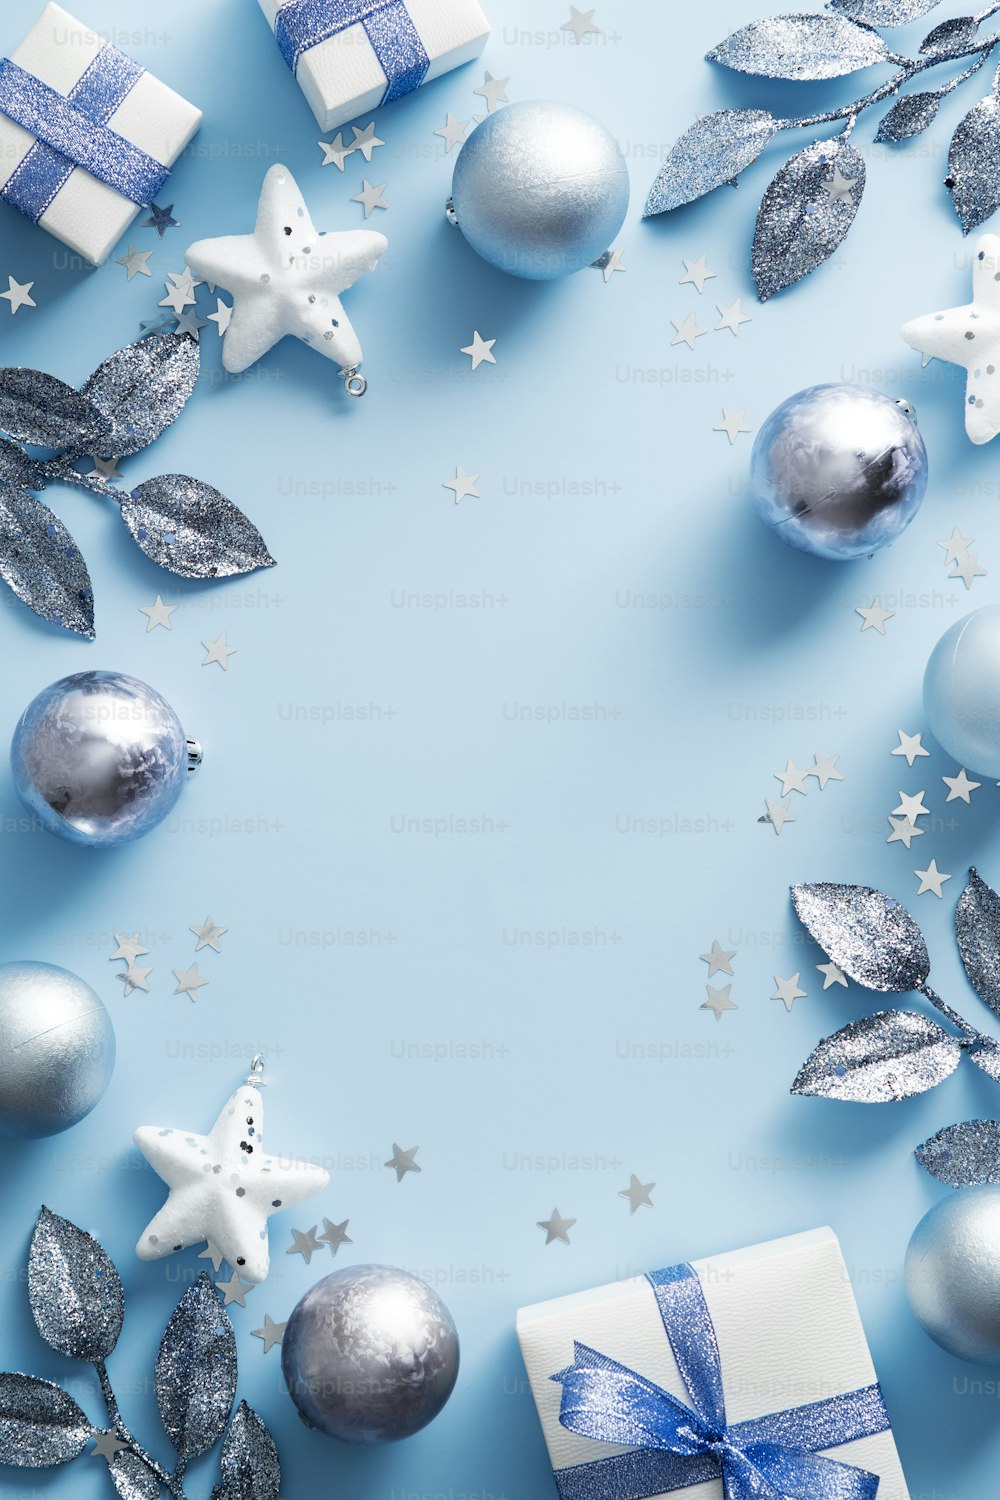 Buon Natale design del banner verticale. Decorazioni natalizie argentate e bianche su sfondo blu. Mockup moderno del poster di Natale.